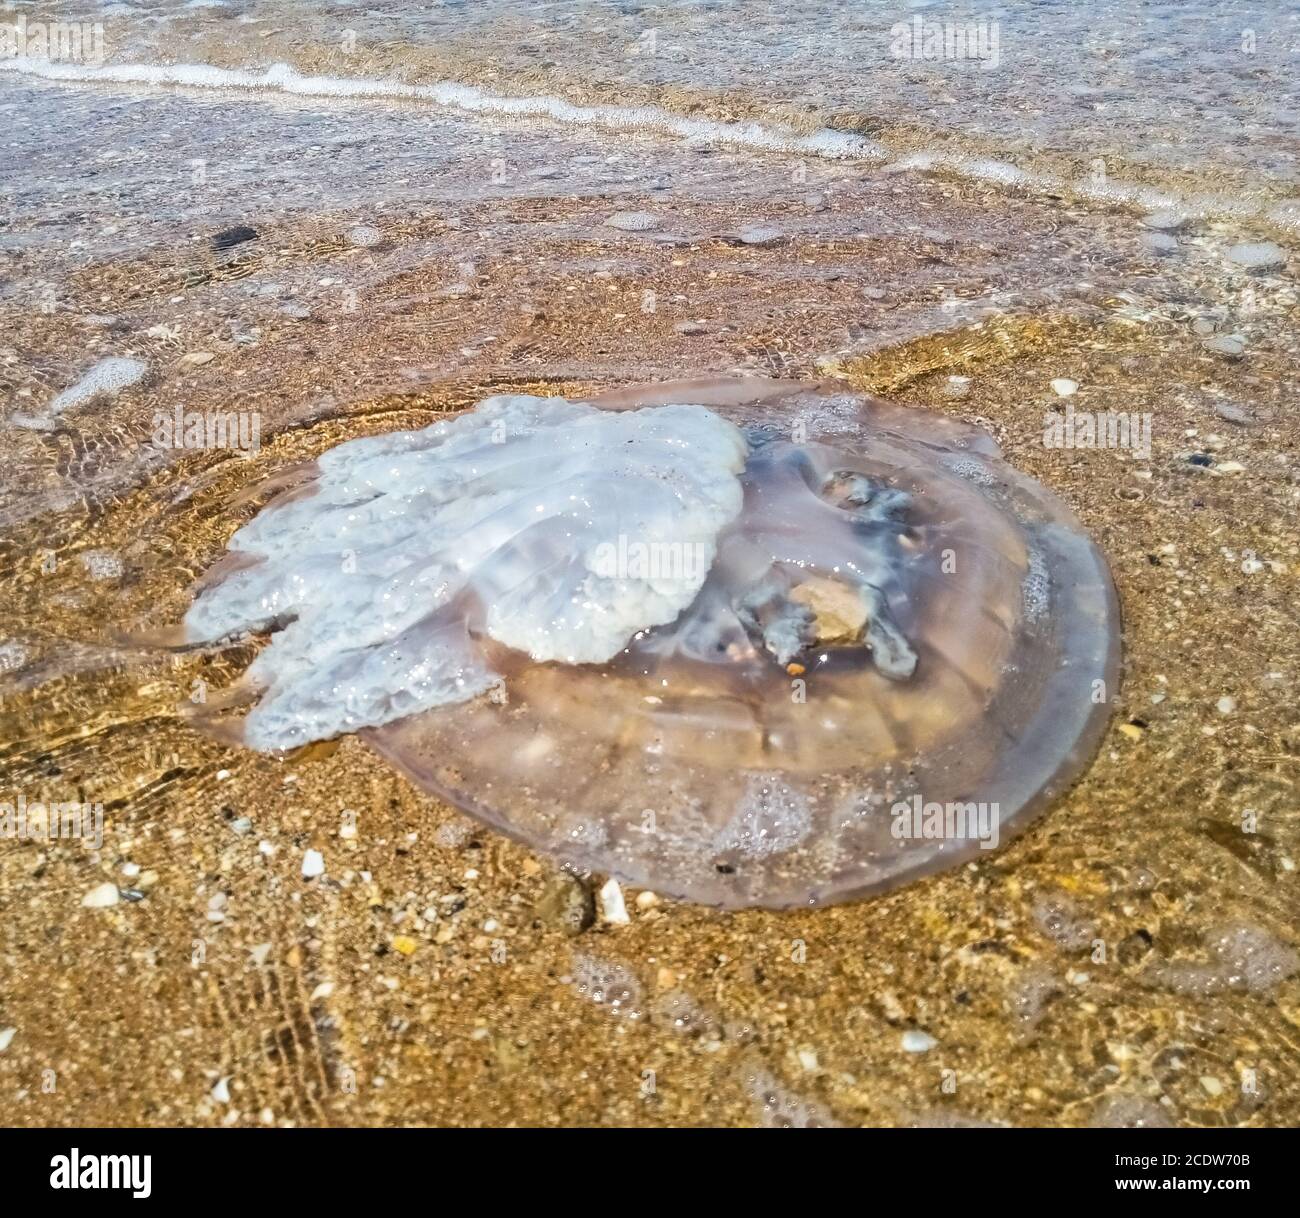 Méduses mortes dans les eaux peu profondes. Corde de racine de méduse Rhizostoma, jetée sur le rivage de la mer. Méduses mortes. Banque D'Images